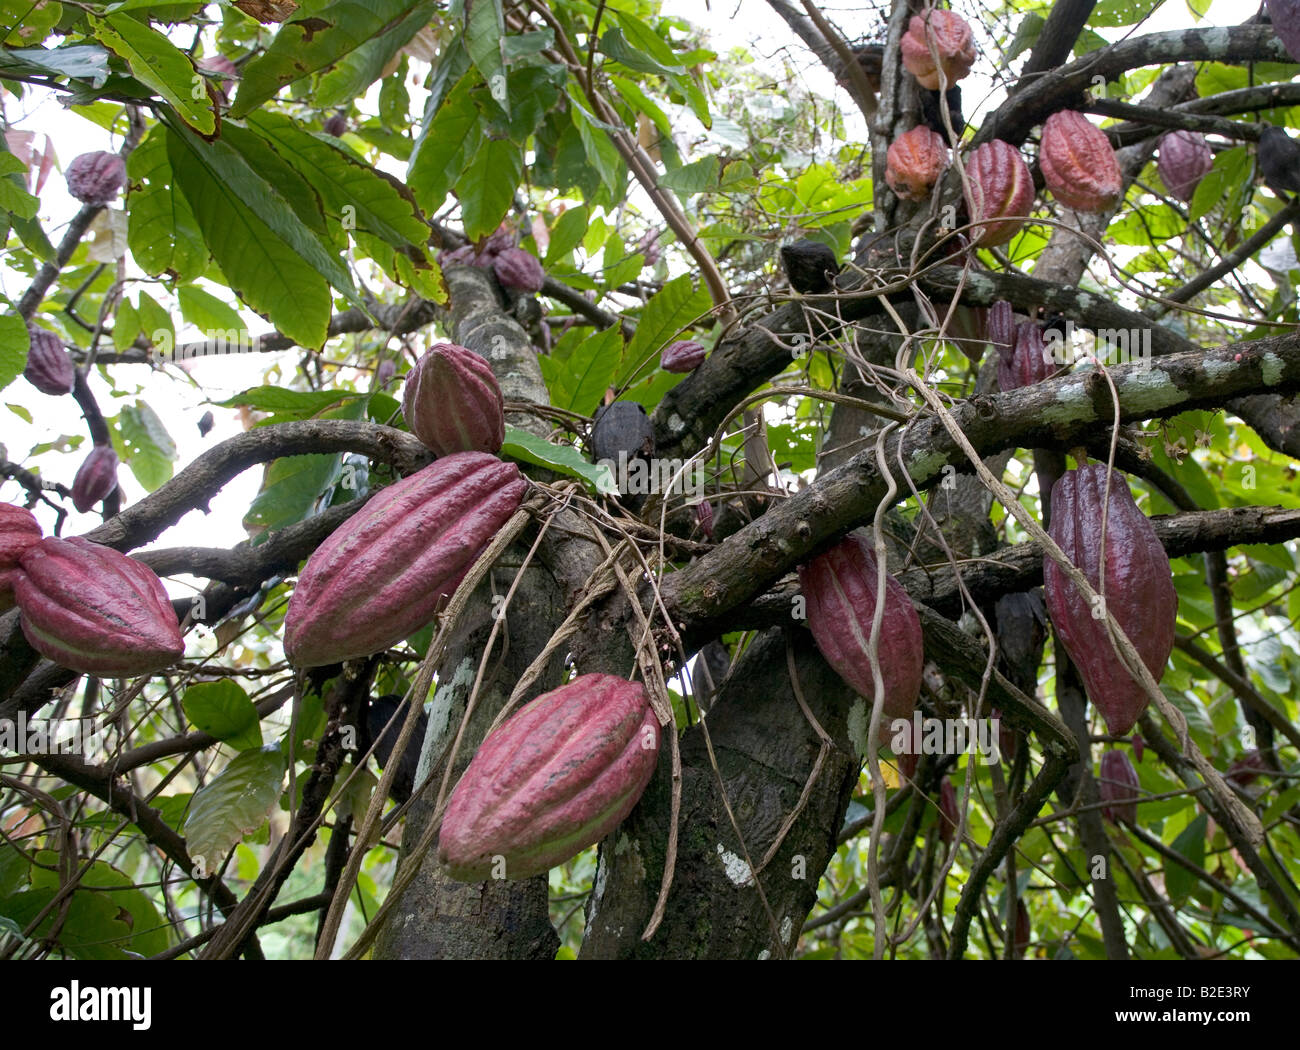 Las mazorcas de cacao o nueces que crecen en un árbol en una plantación en el Caribe las semillas adentro son llamados frijoles Foto de stock